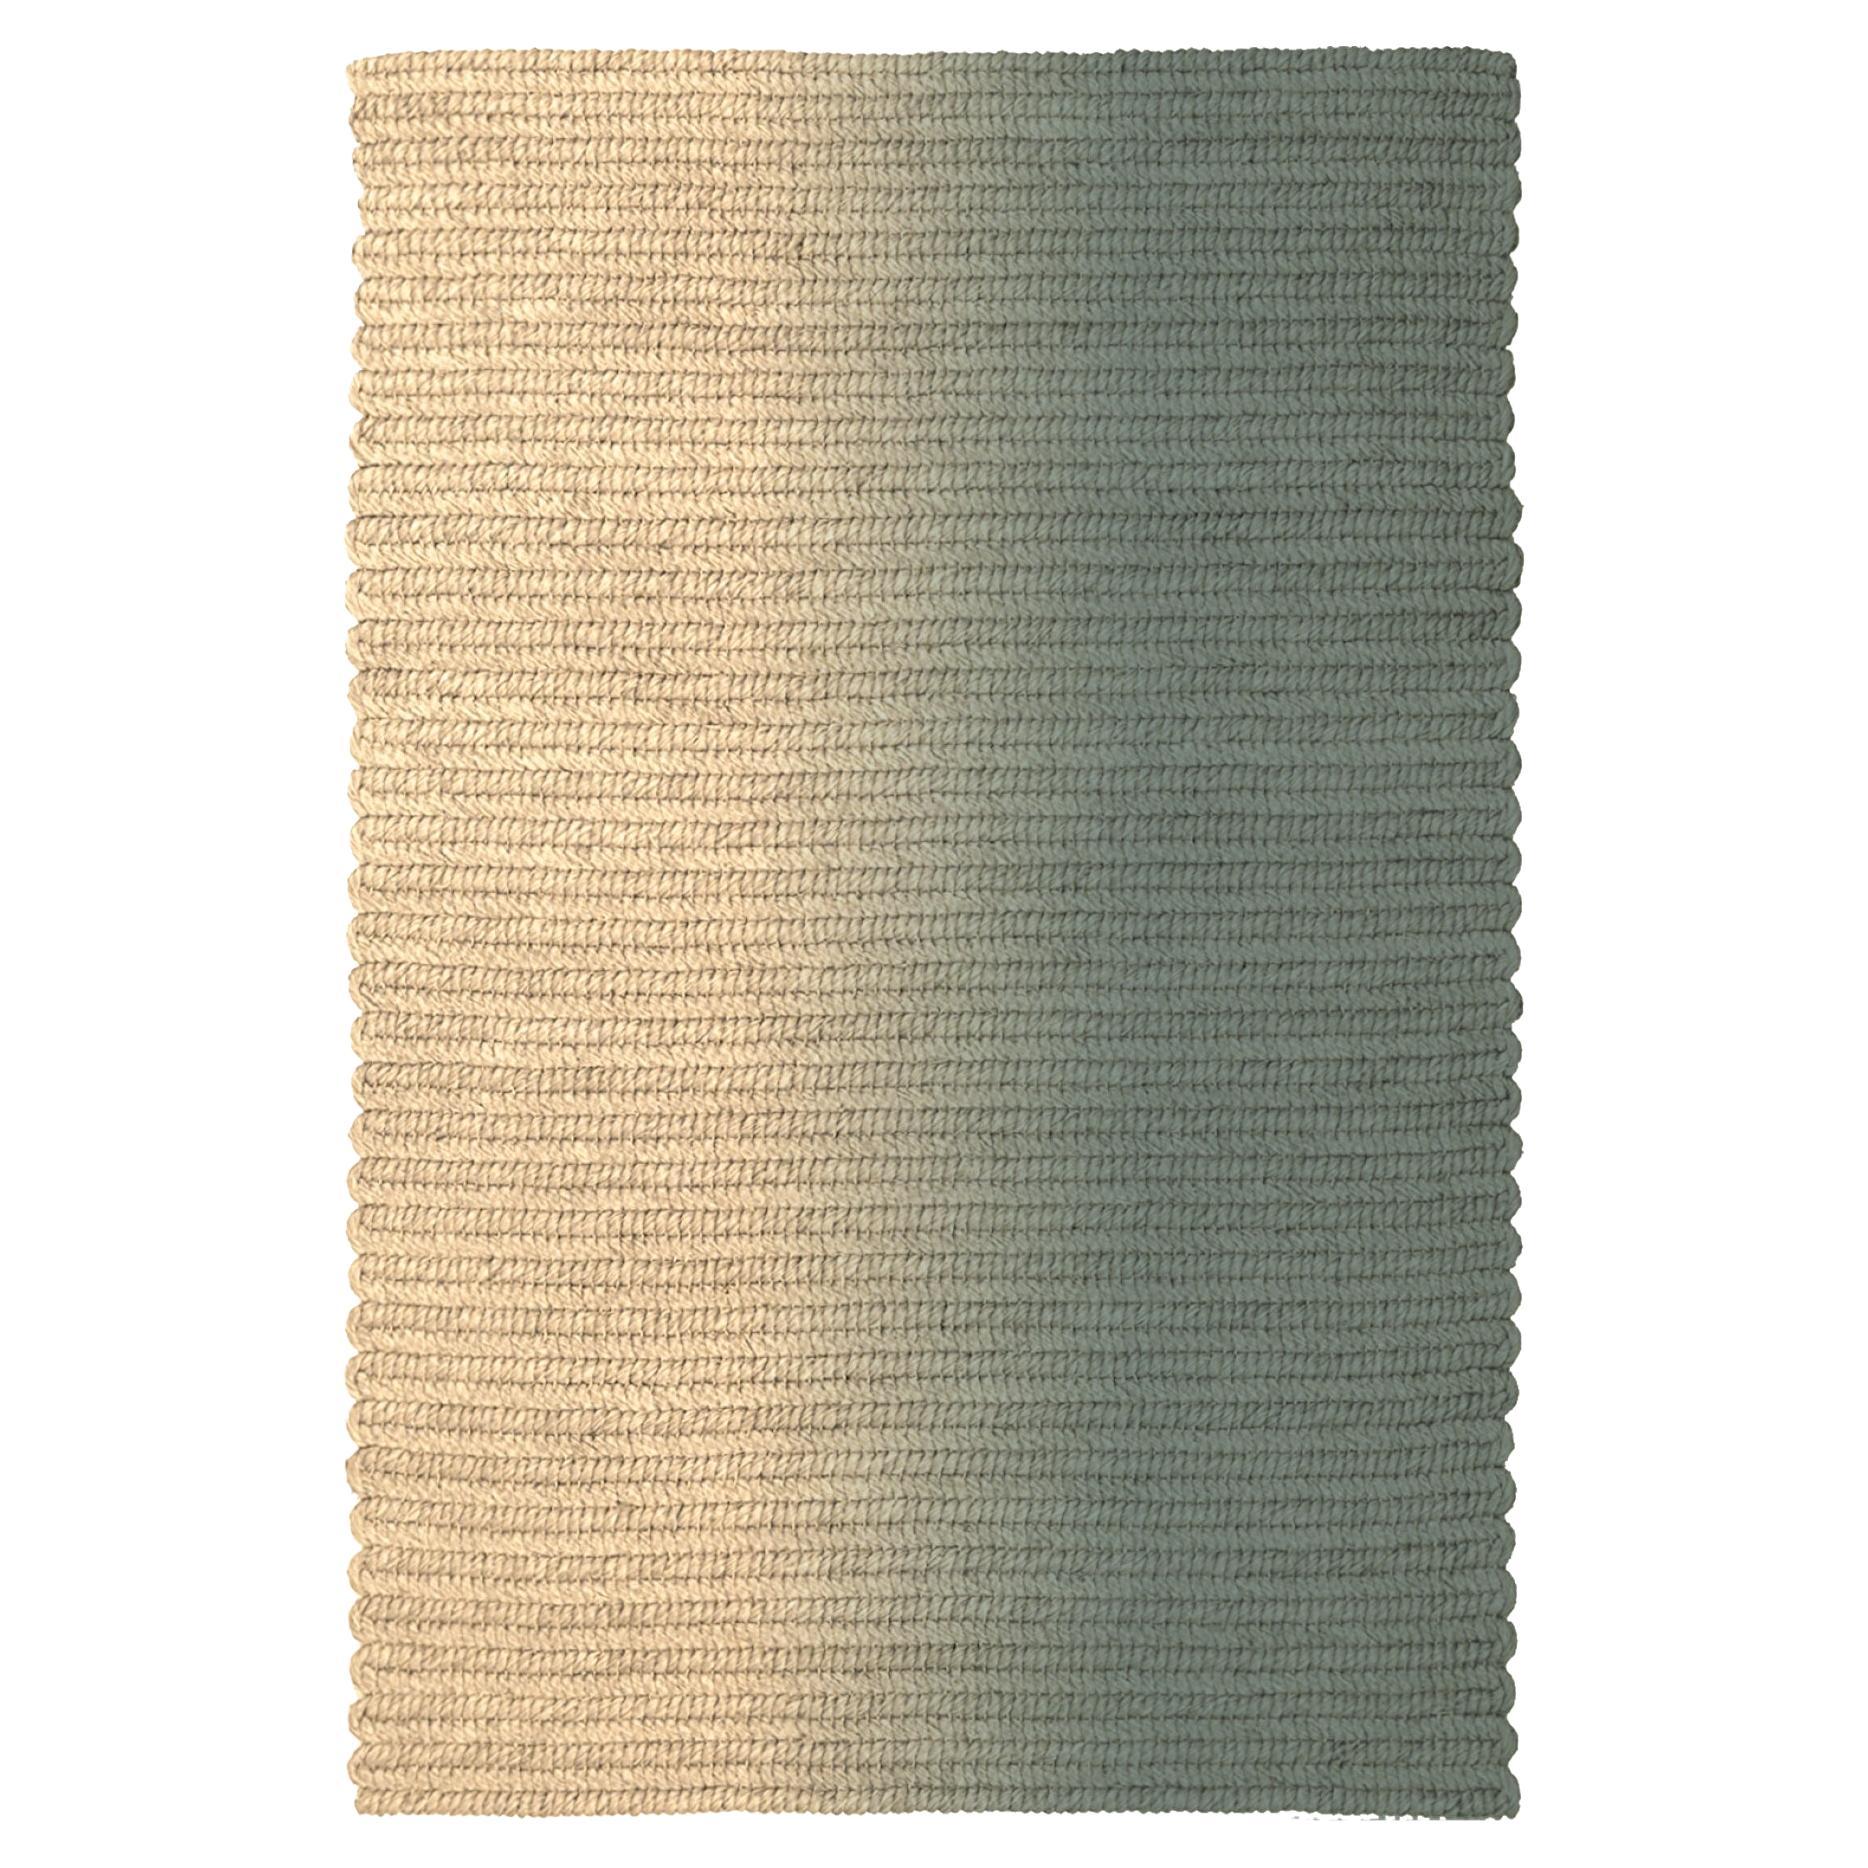 „Switch“-Teppich aus Abaca, Caffe Latte,  260x390cm  Claire Vos für Musett Design